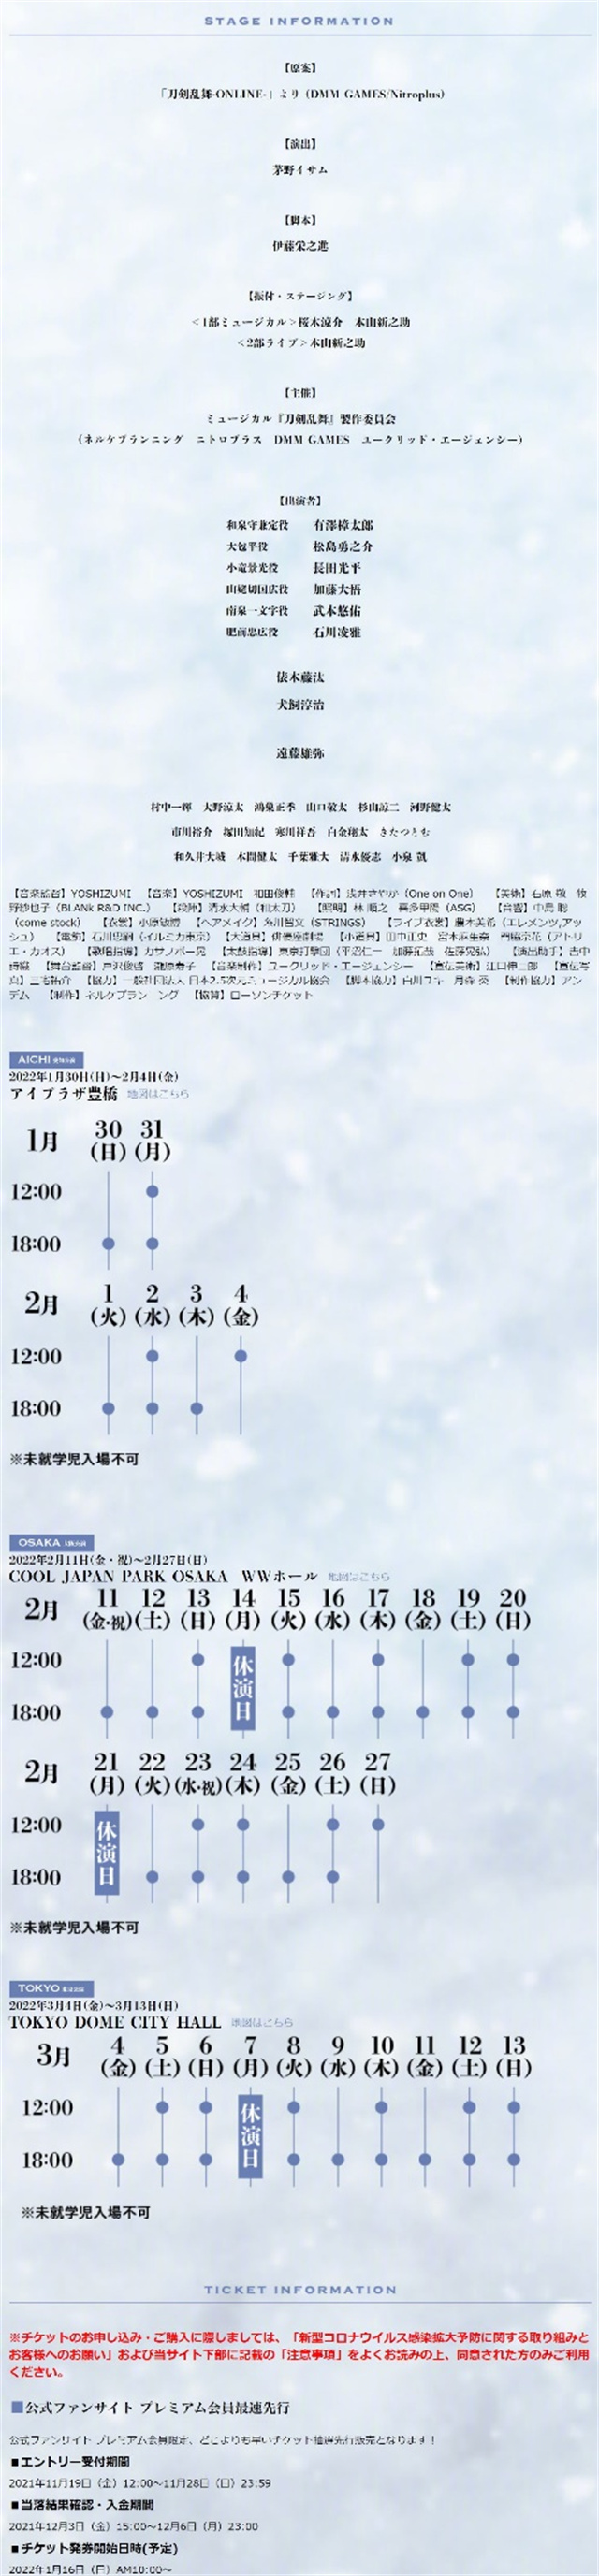 音乐剧「江水散花雪」宣布主视觉图、角色视觉图